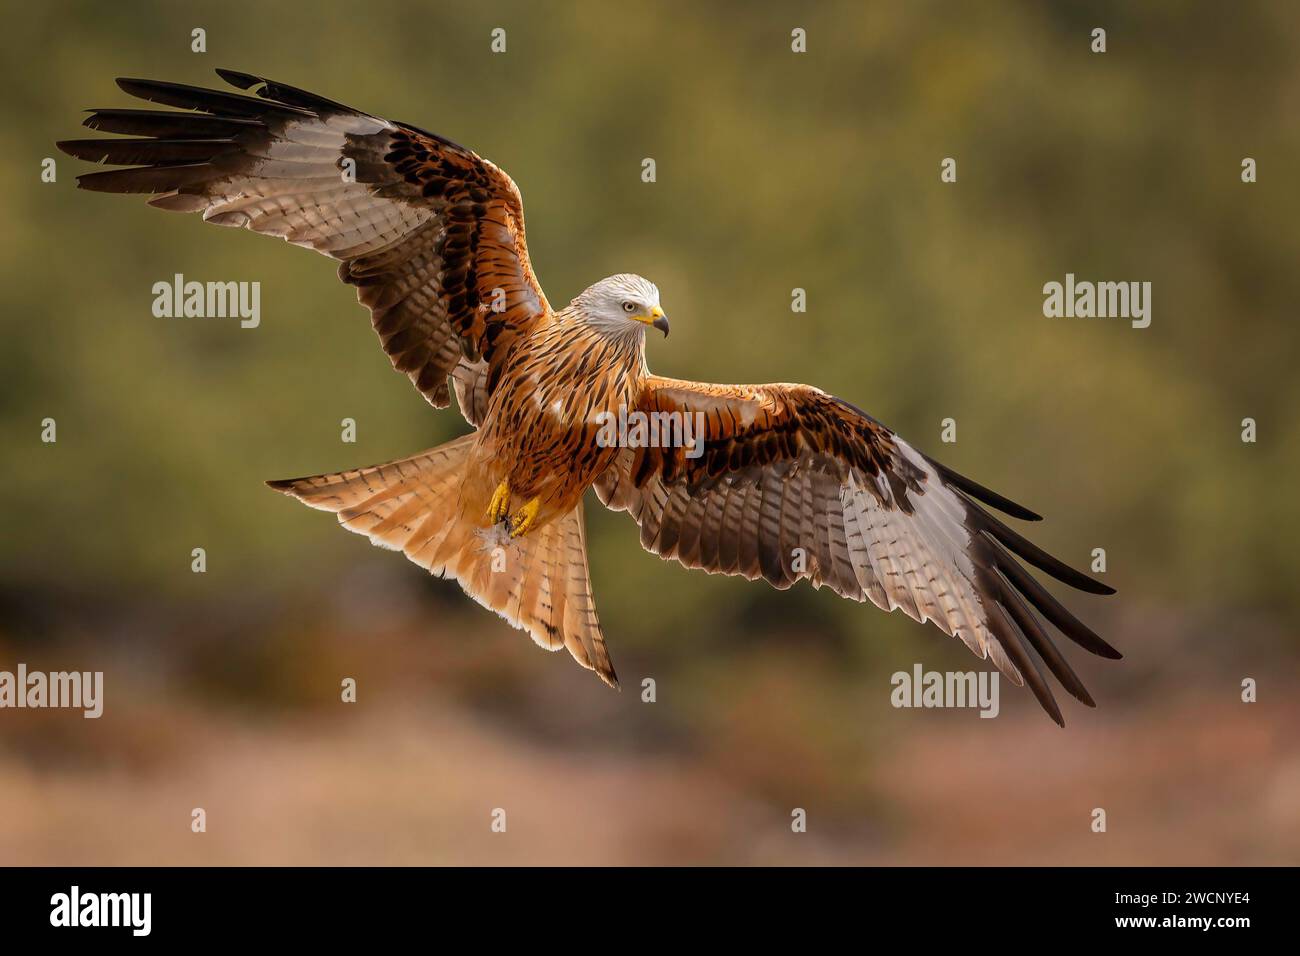 Red Kite (Milvus milvus), Red Kite, Montagu's Harrier, Harrier, foraging, wings spread, hunting, in flight, Terres de Lleida, Catalan Pyrenees, Spain Stock Photo